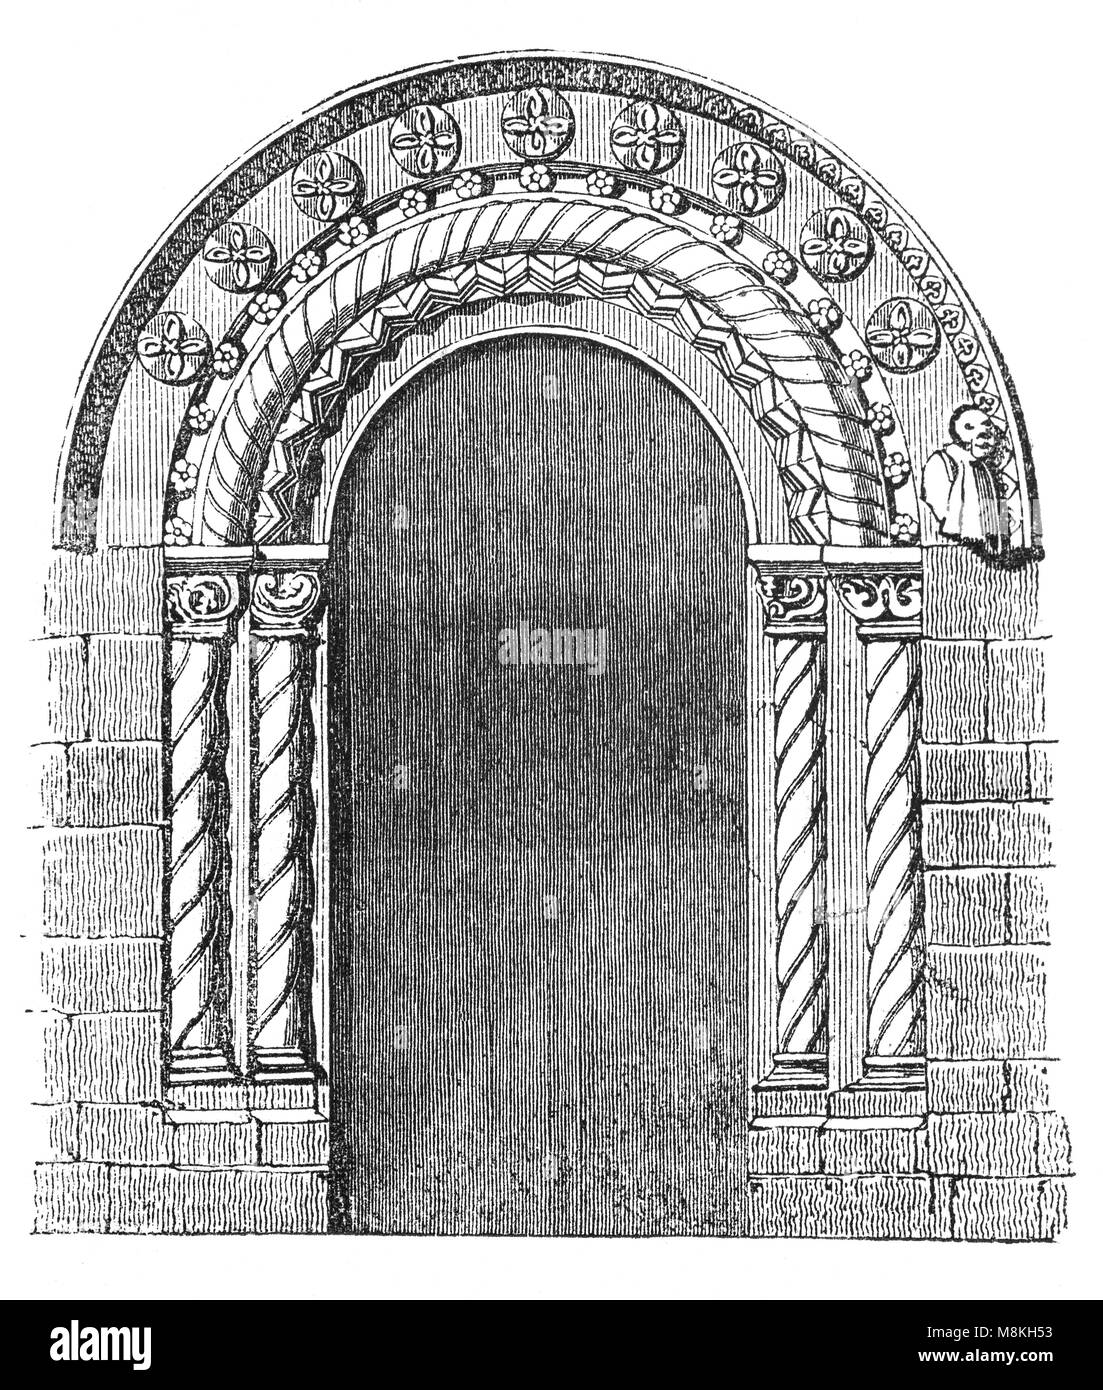 La porte romane de l'abbaye de Romsey, une église paroissiale de l'Église d'Angleterre en Romsey, une ville de marché dans le Hampshire, en Angleterre. L'église a été construite au cours du 10e siècle, dans le cadre d'une fondation Bénédictine. Il a finalement été supprimé par Henry VIII lors de la dissolution des monastères en 1539, cependant l'abbaye n'a pas subi le sort de nombreux autres établissements religieux à cette époque et n'a pas démoli. Banque D'Images